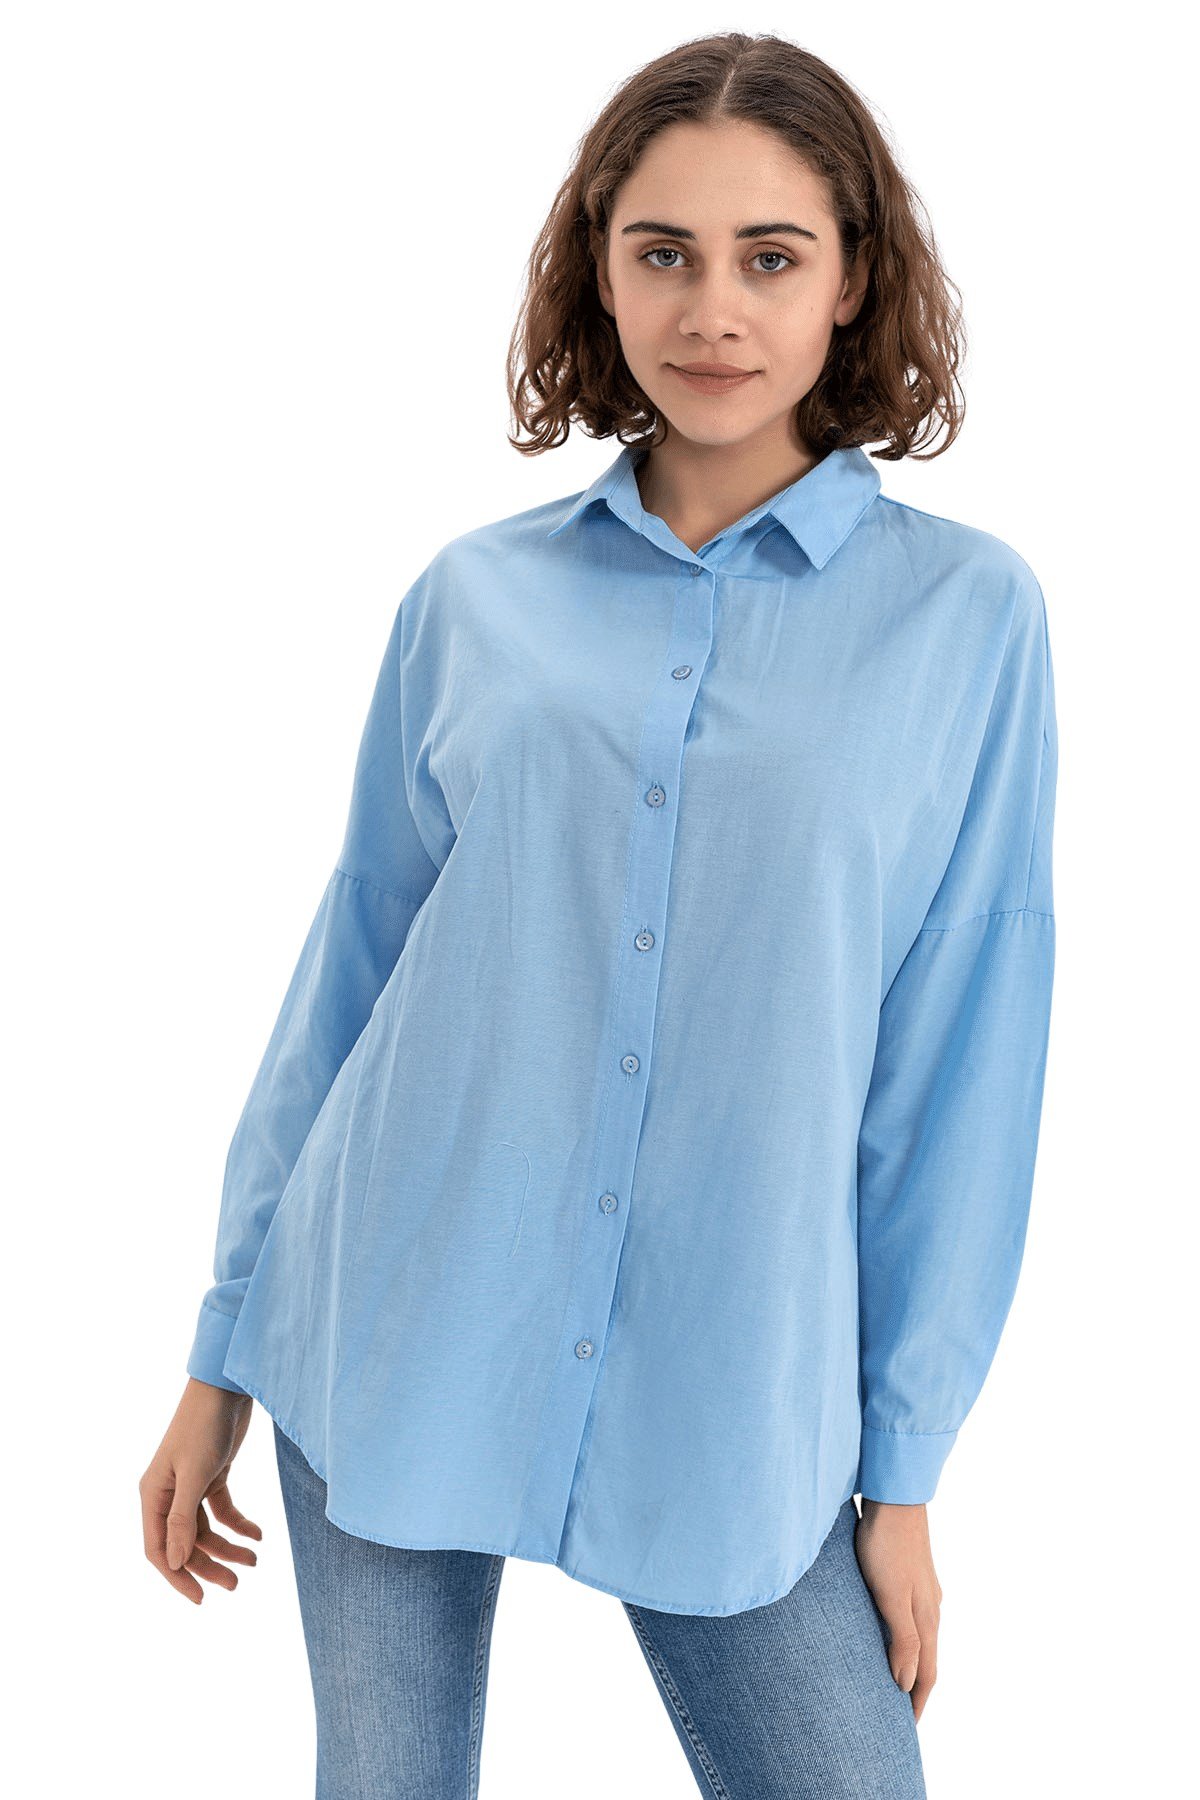 Kadın Bebe Mavi Geniş Yaka Düz Gömlek - Butik Buruç